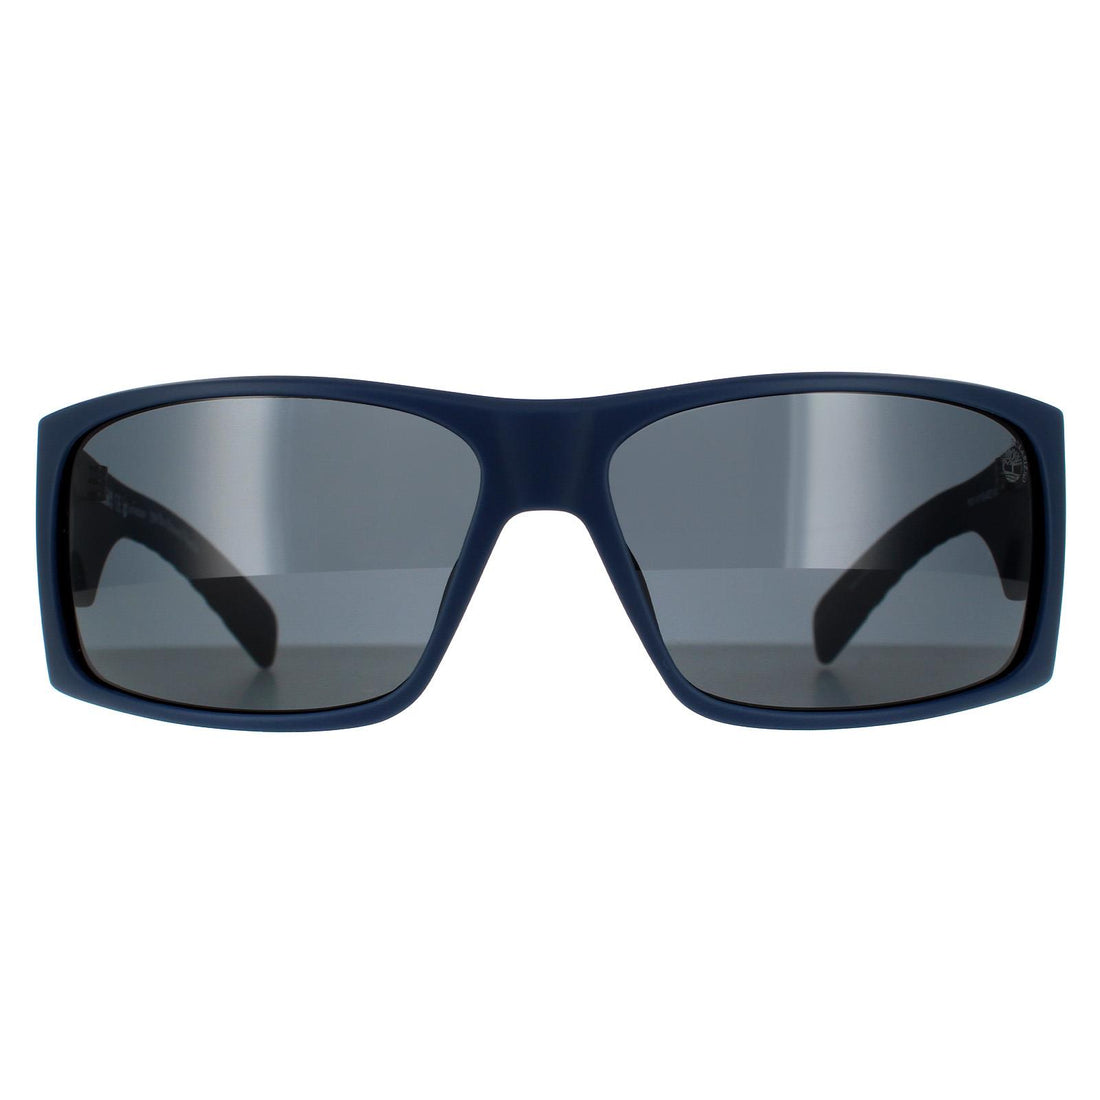 Timberland TB9215 Sunglasses Matte Blue / Smoke Polarized